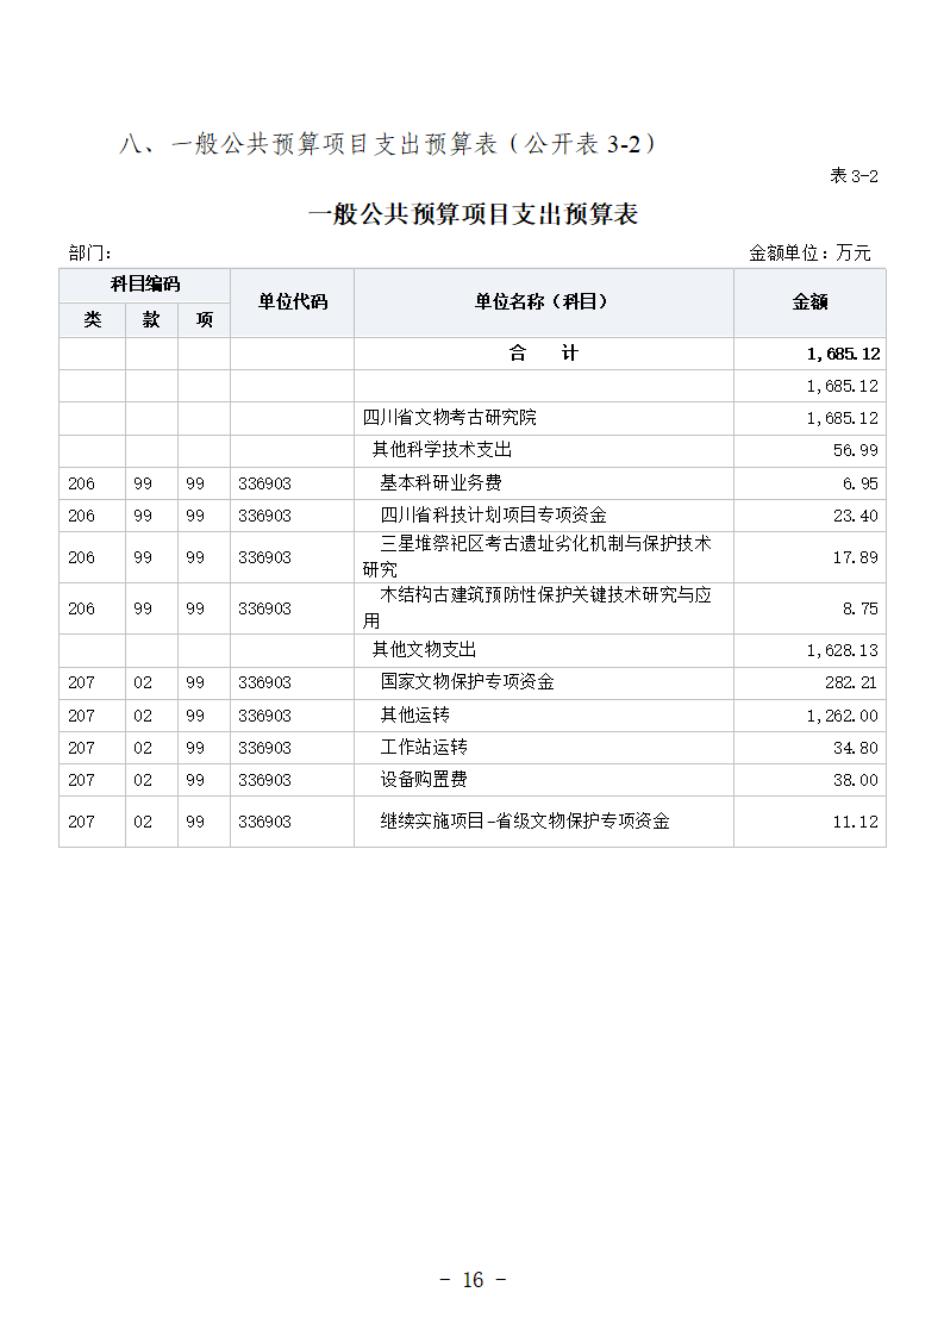 省考古院2024年四川省省级单位预算公开模板(3.14)_17.jpg